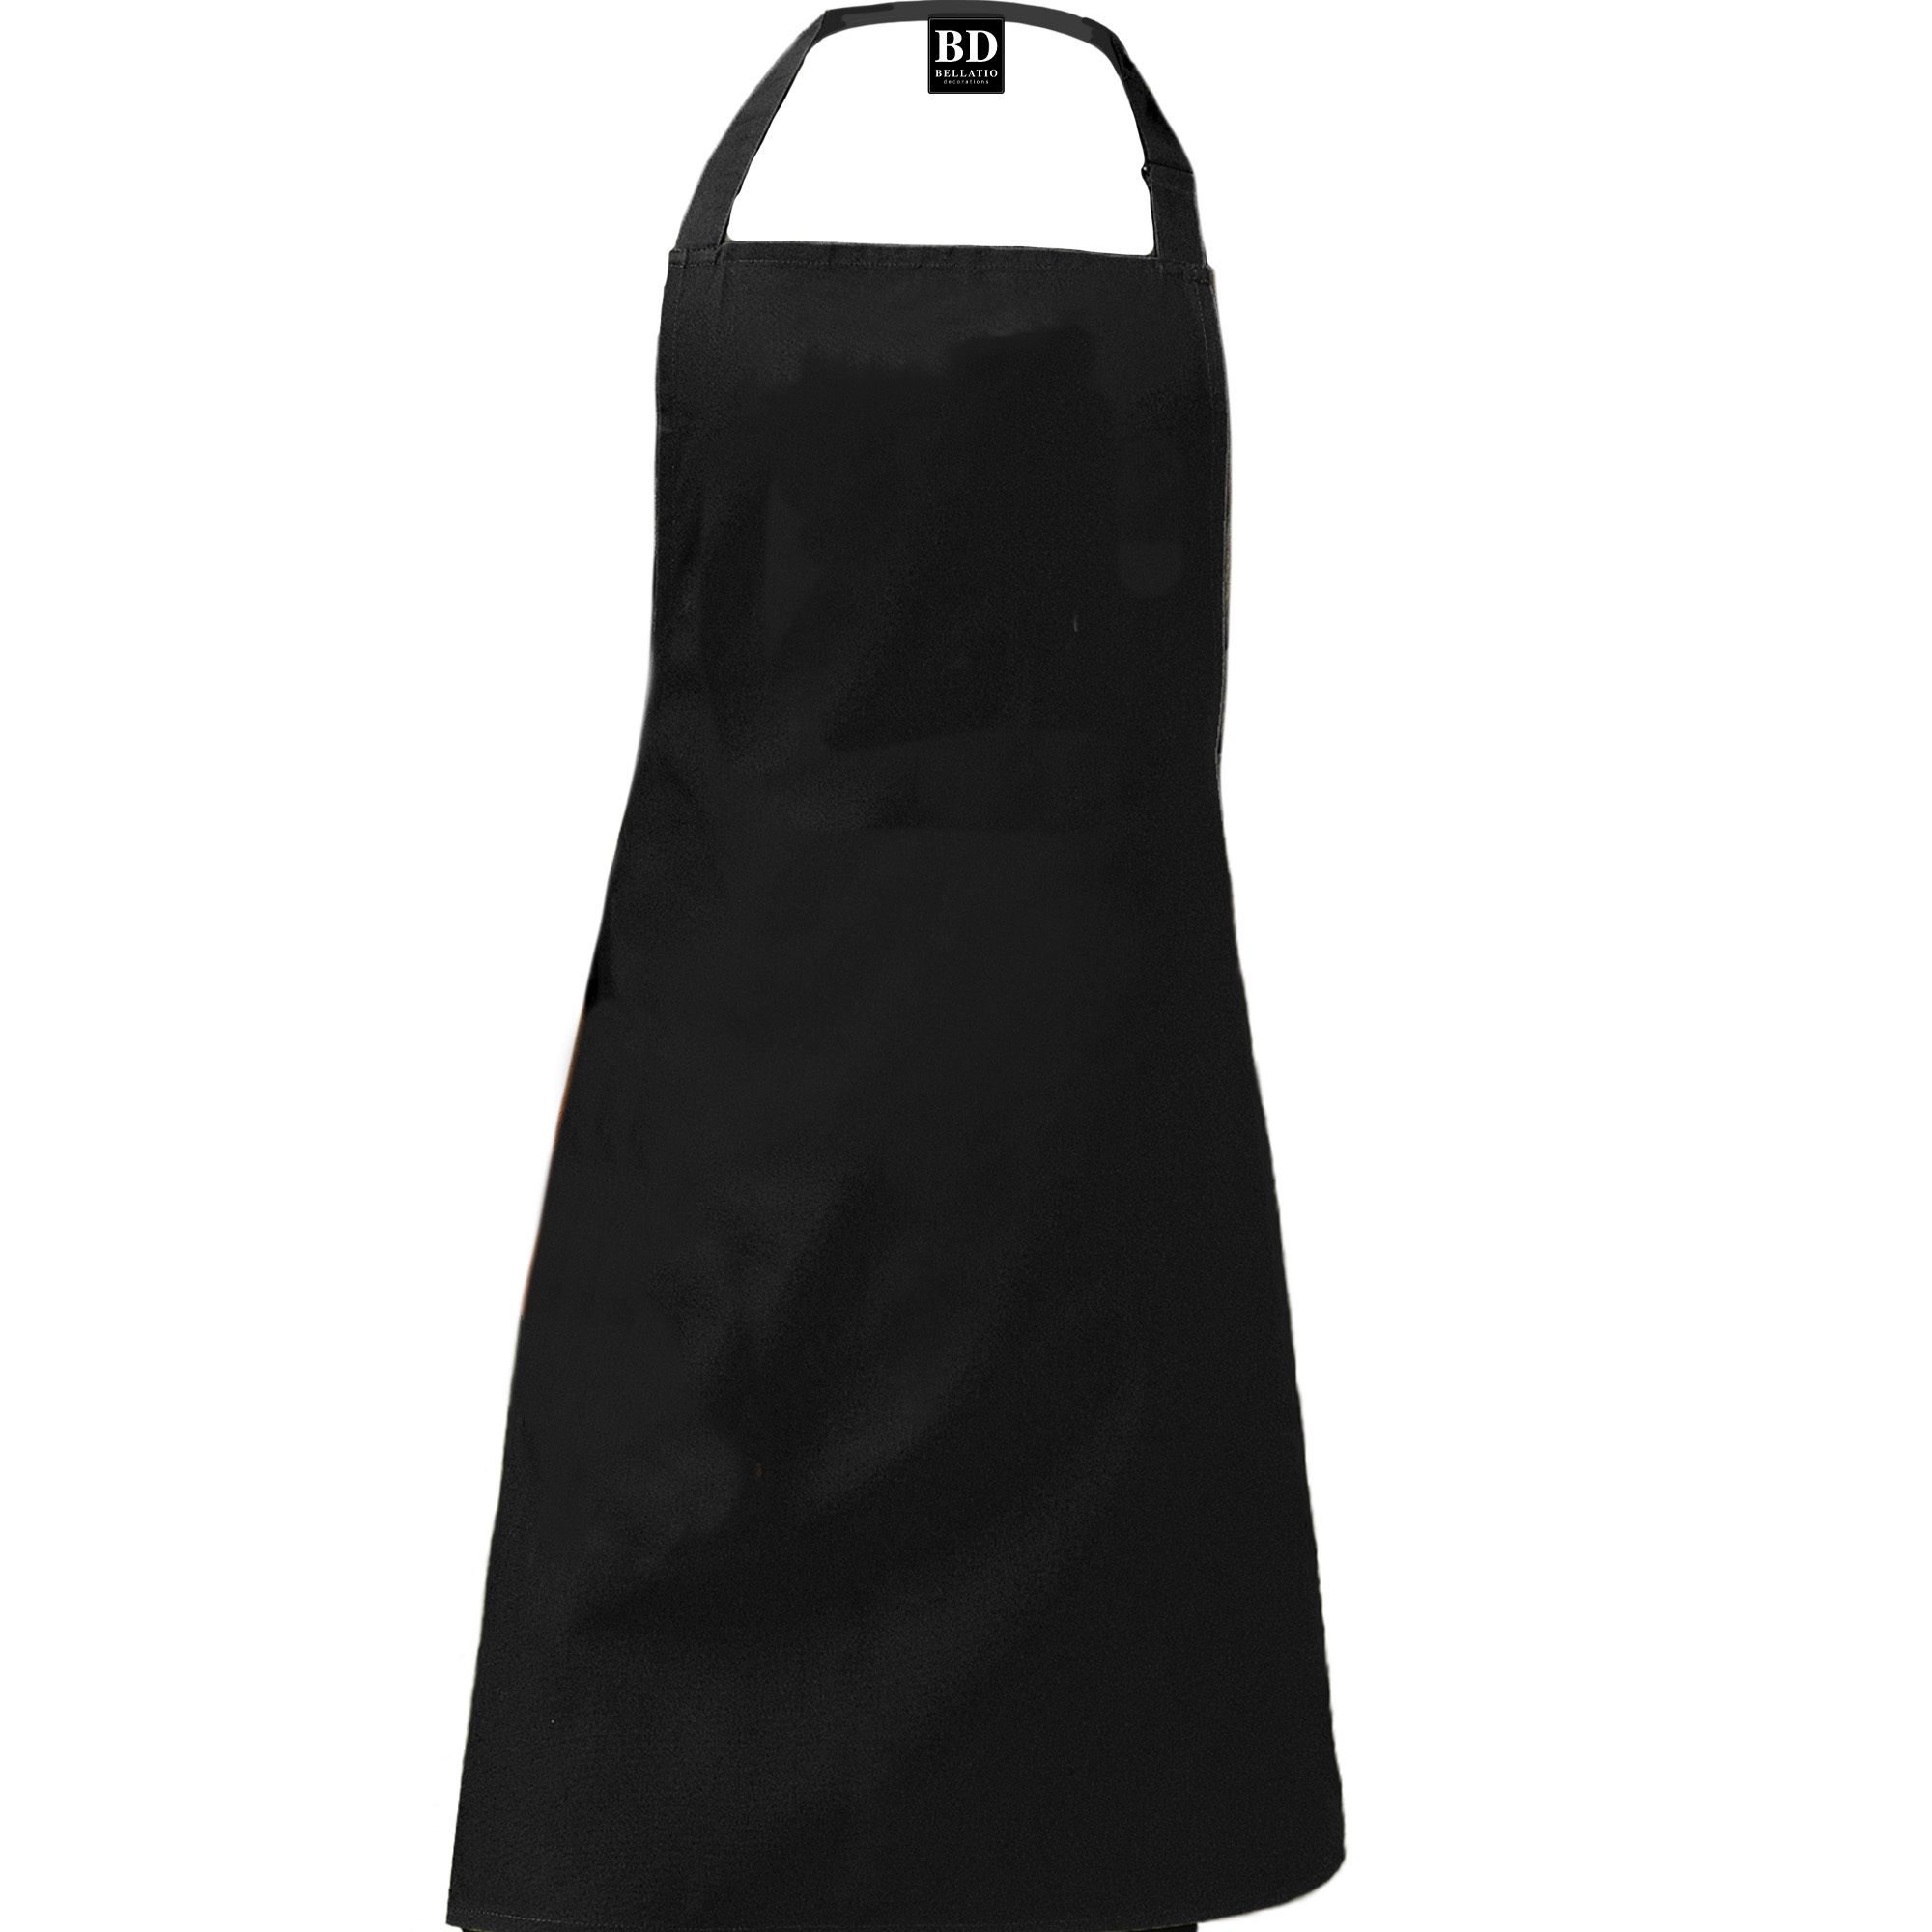 Hungary apron black 